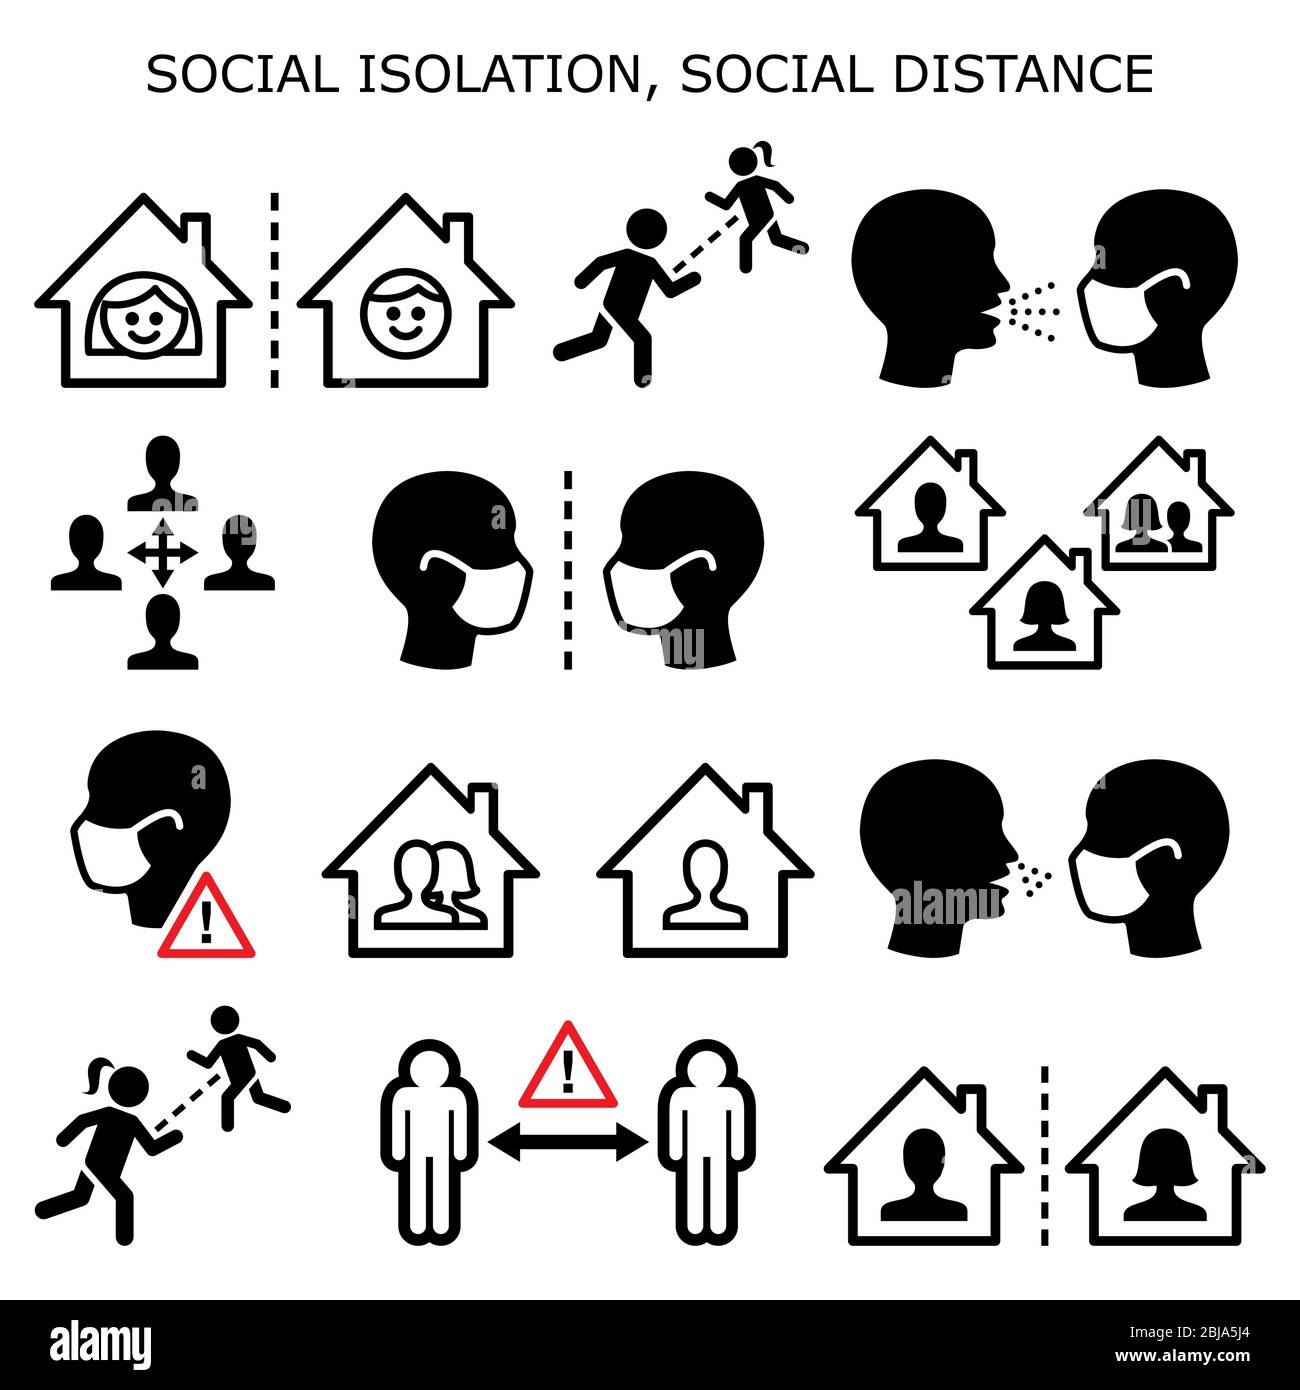 Isolement social, distance sociale, personnes en quarantaine isolées à la maison pendant la pandémie ou épidémie icônes vectorielles définies - mettre en valeur le concept de courbe Illustration de Vecteur